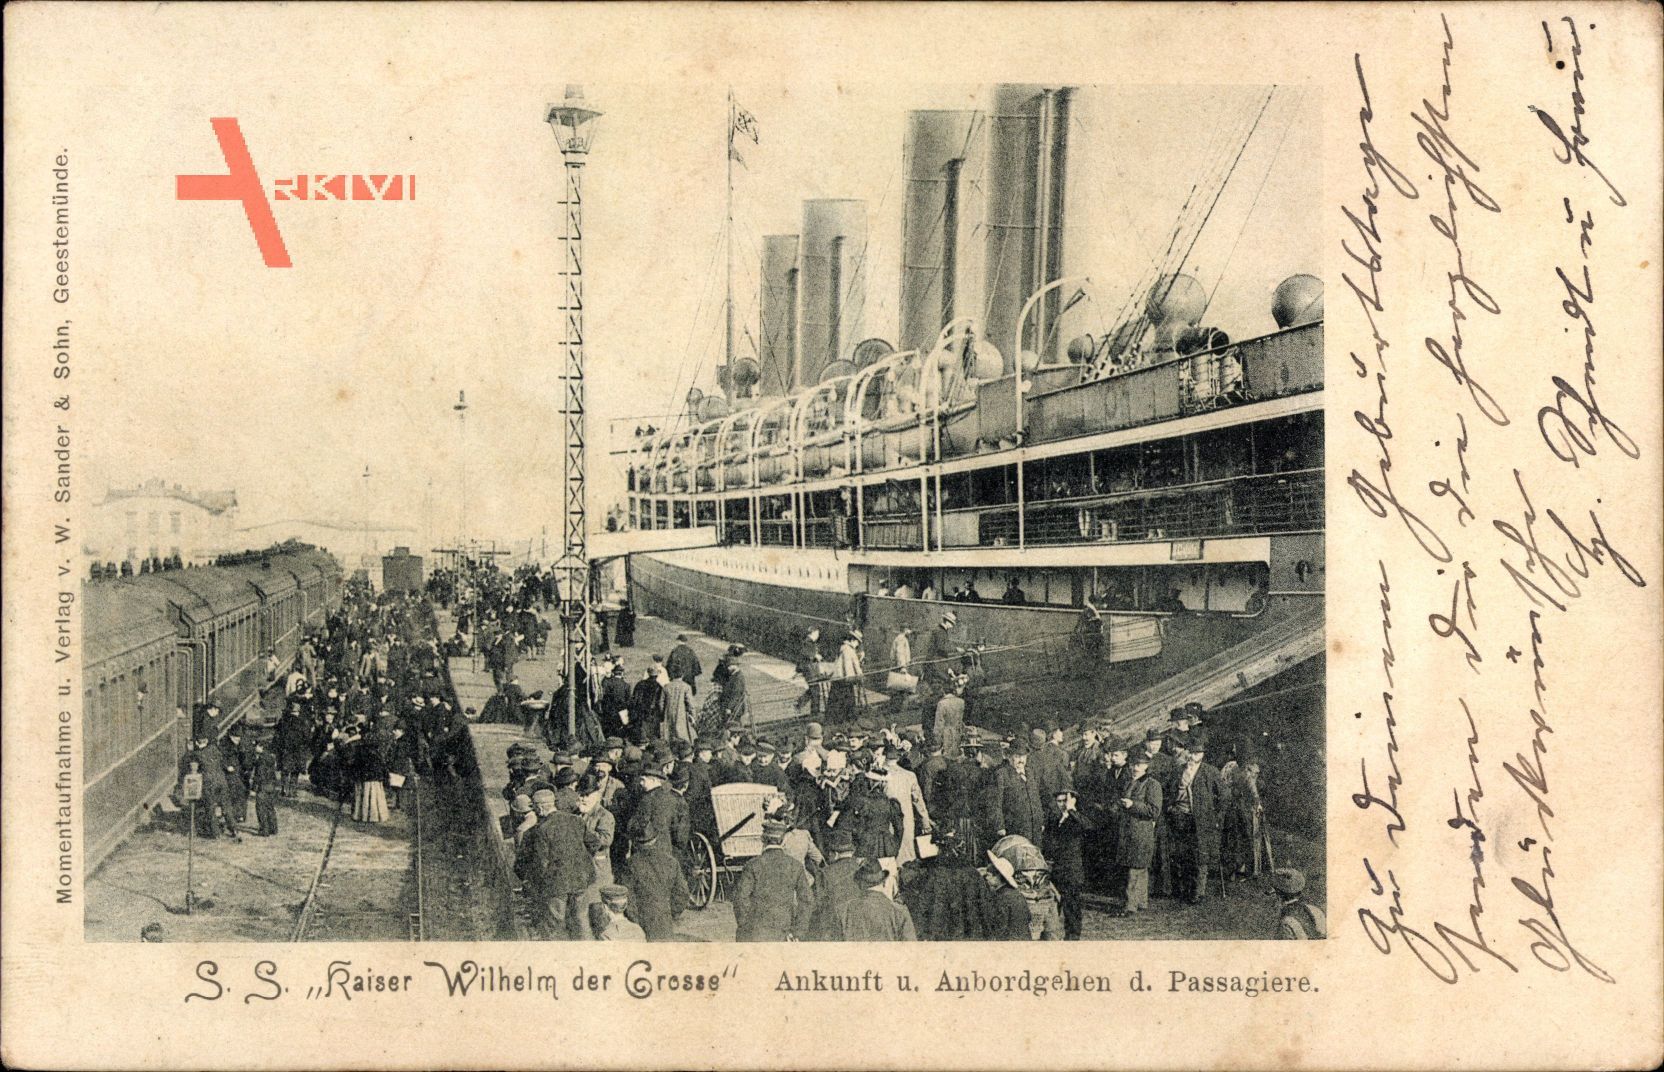 SS Kaiser Wilhelm der Große, Norddeutscher Lloyd Bremen, Ankuft, Passagiere